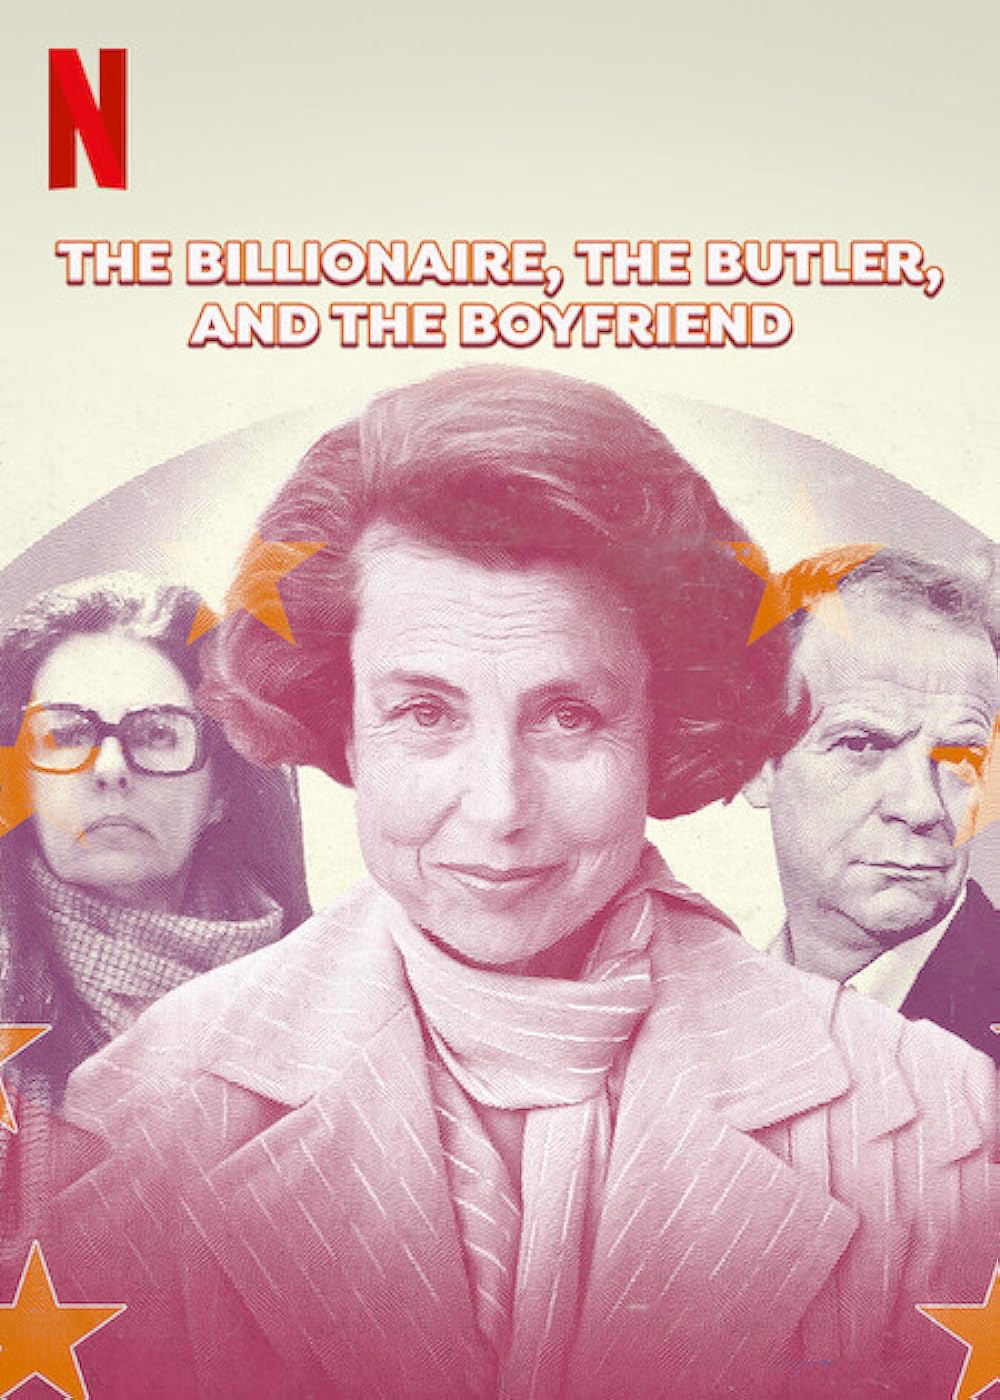 Poster Phim Bê bối Bettencourt: Nữ tỷ phú, người quản gia và bạn trai (The Billionaire, The Butler, and the Boyfriend)